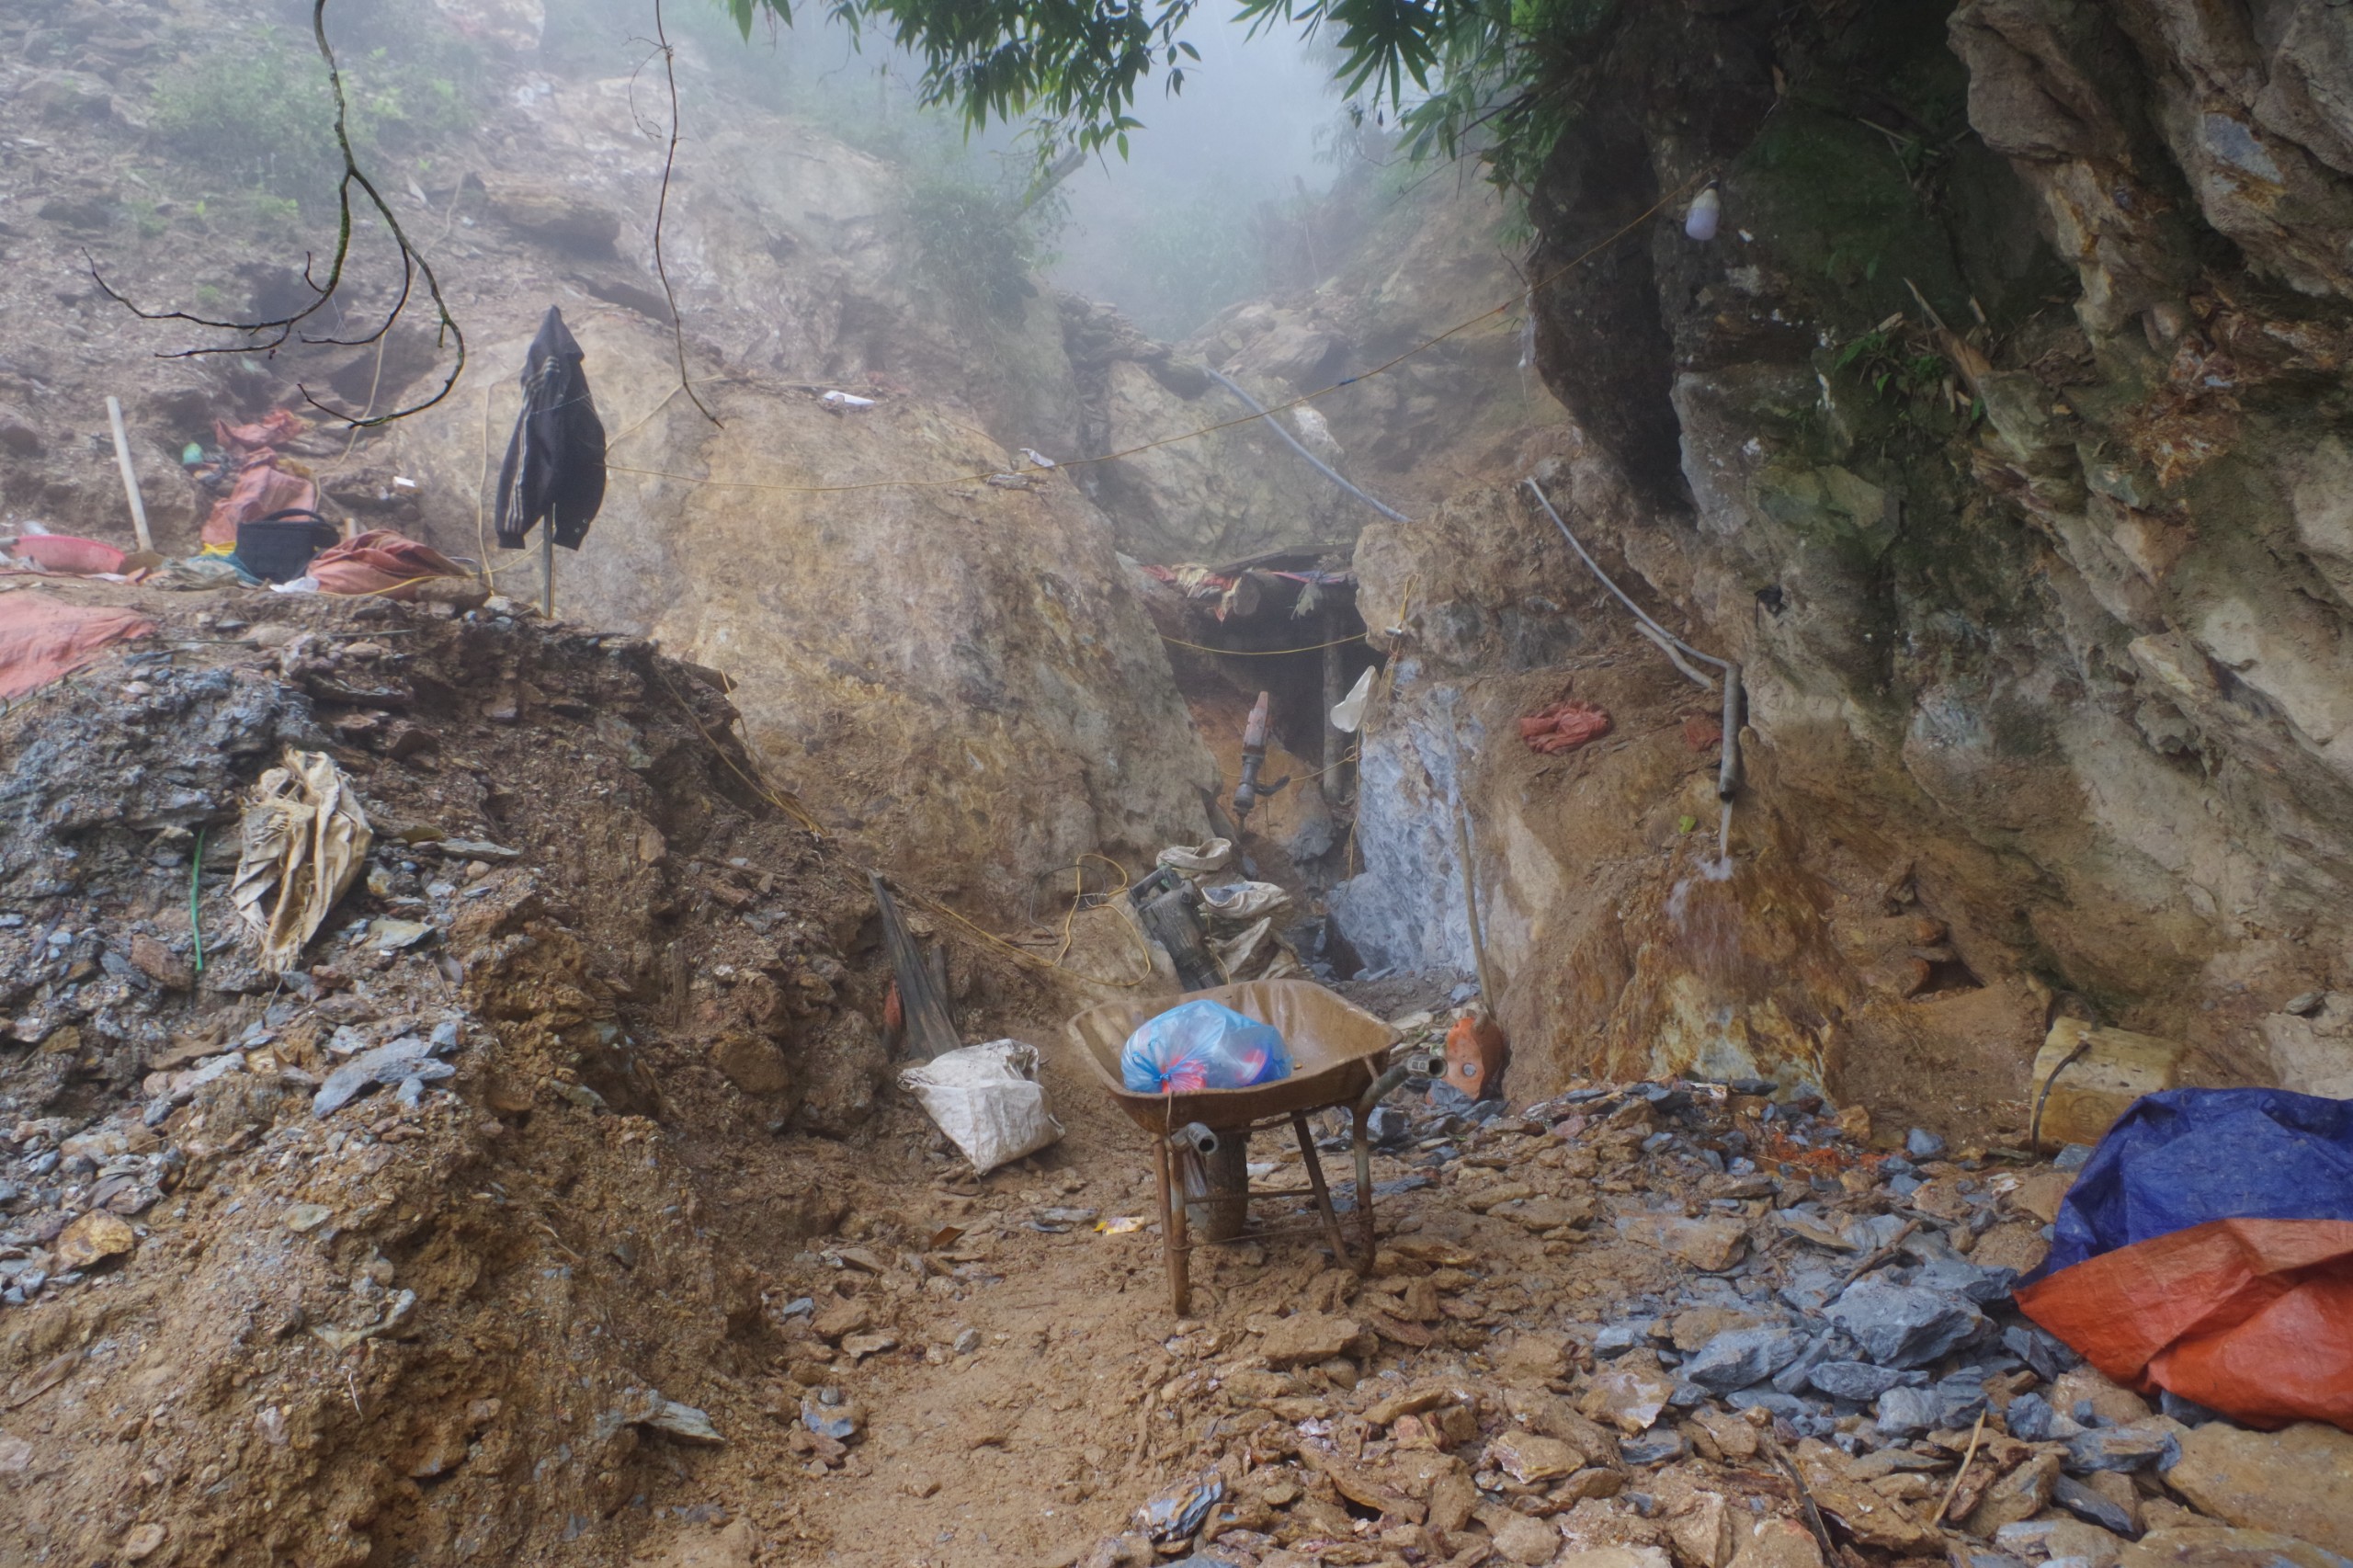 Công an Huyện Mường Tè bắt giữ 06 đối tượng về hành vi "khai thác khoáng sản trái phép”